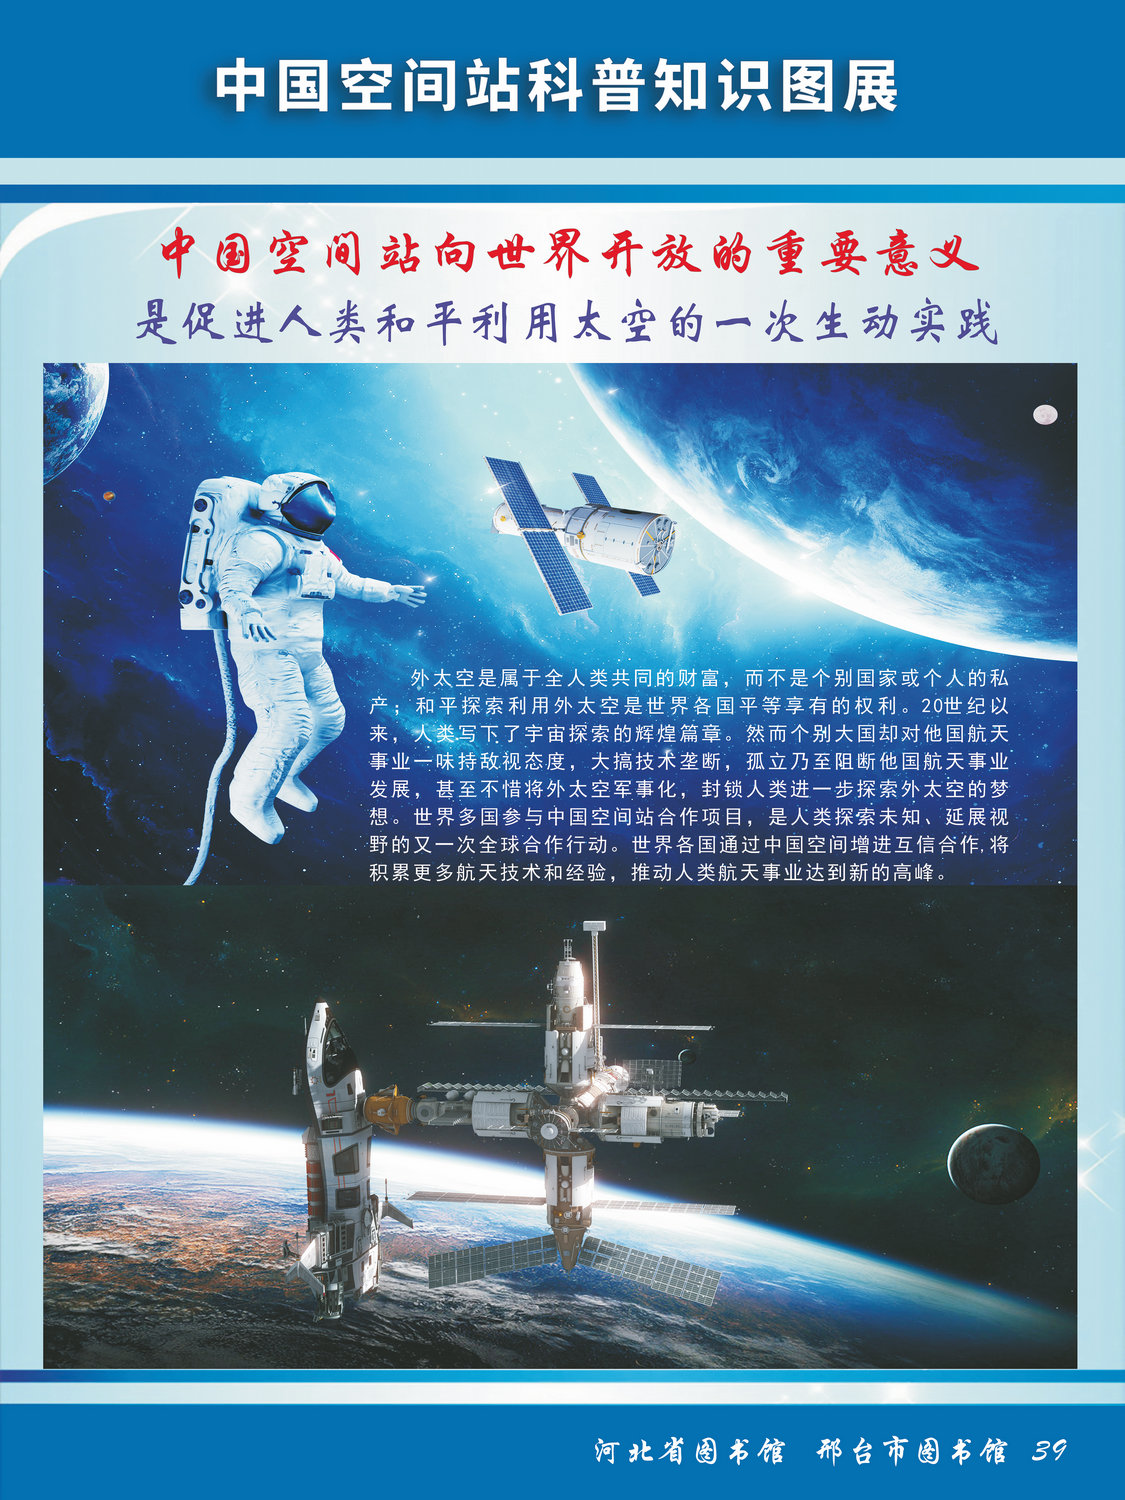 中国空间站科普知识图文展_图39